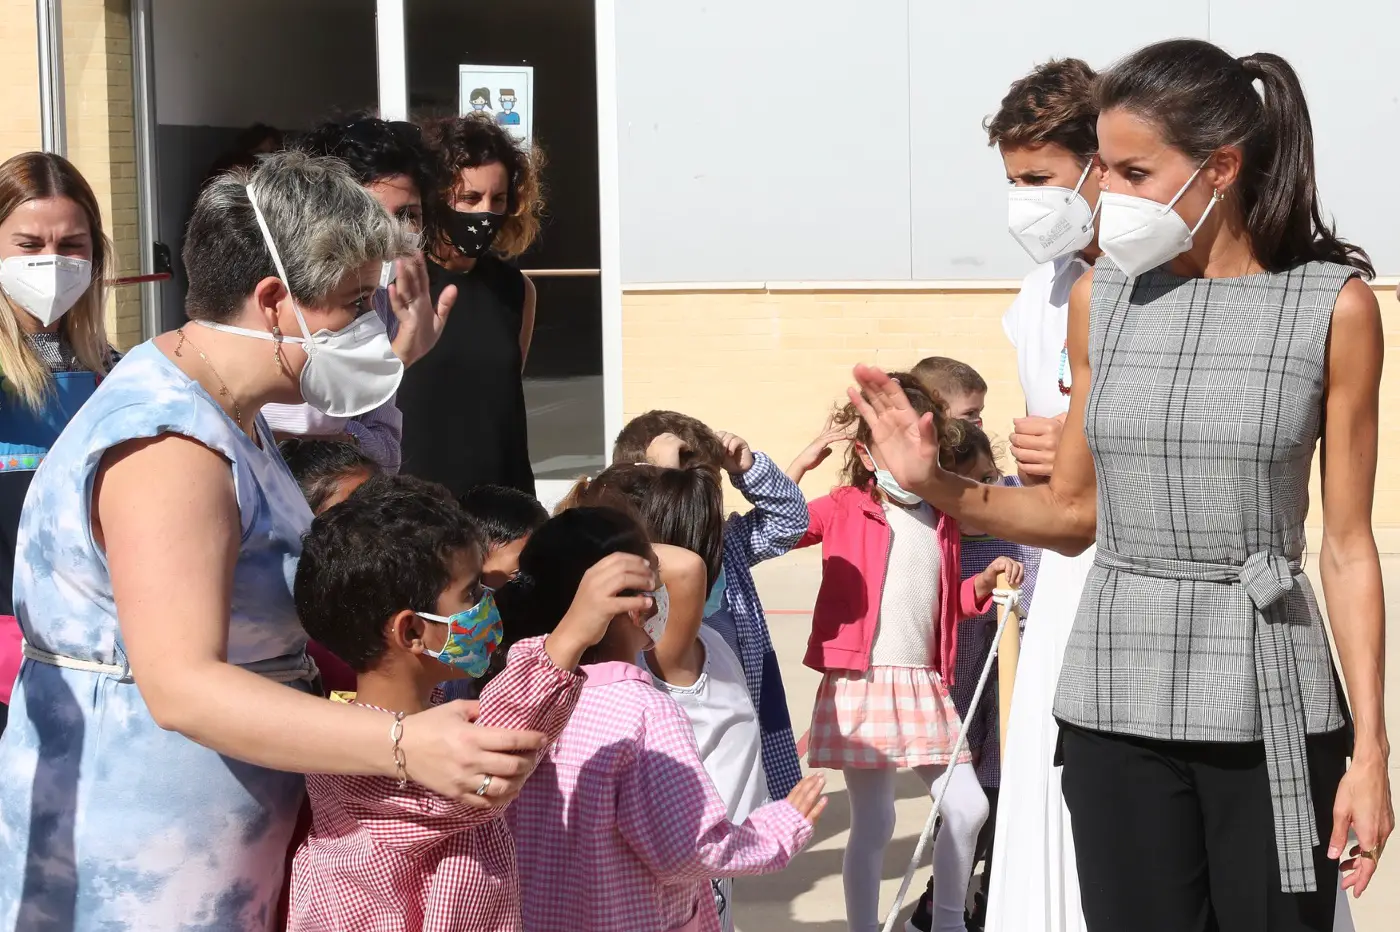 Queen Letizia meeting school kids in Navarra